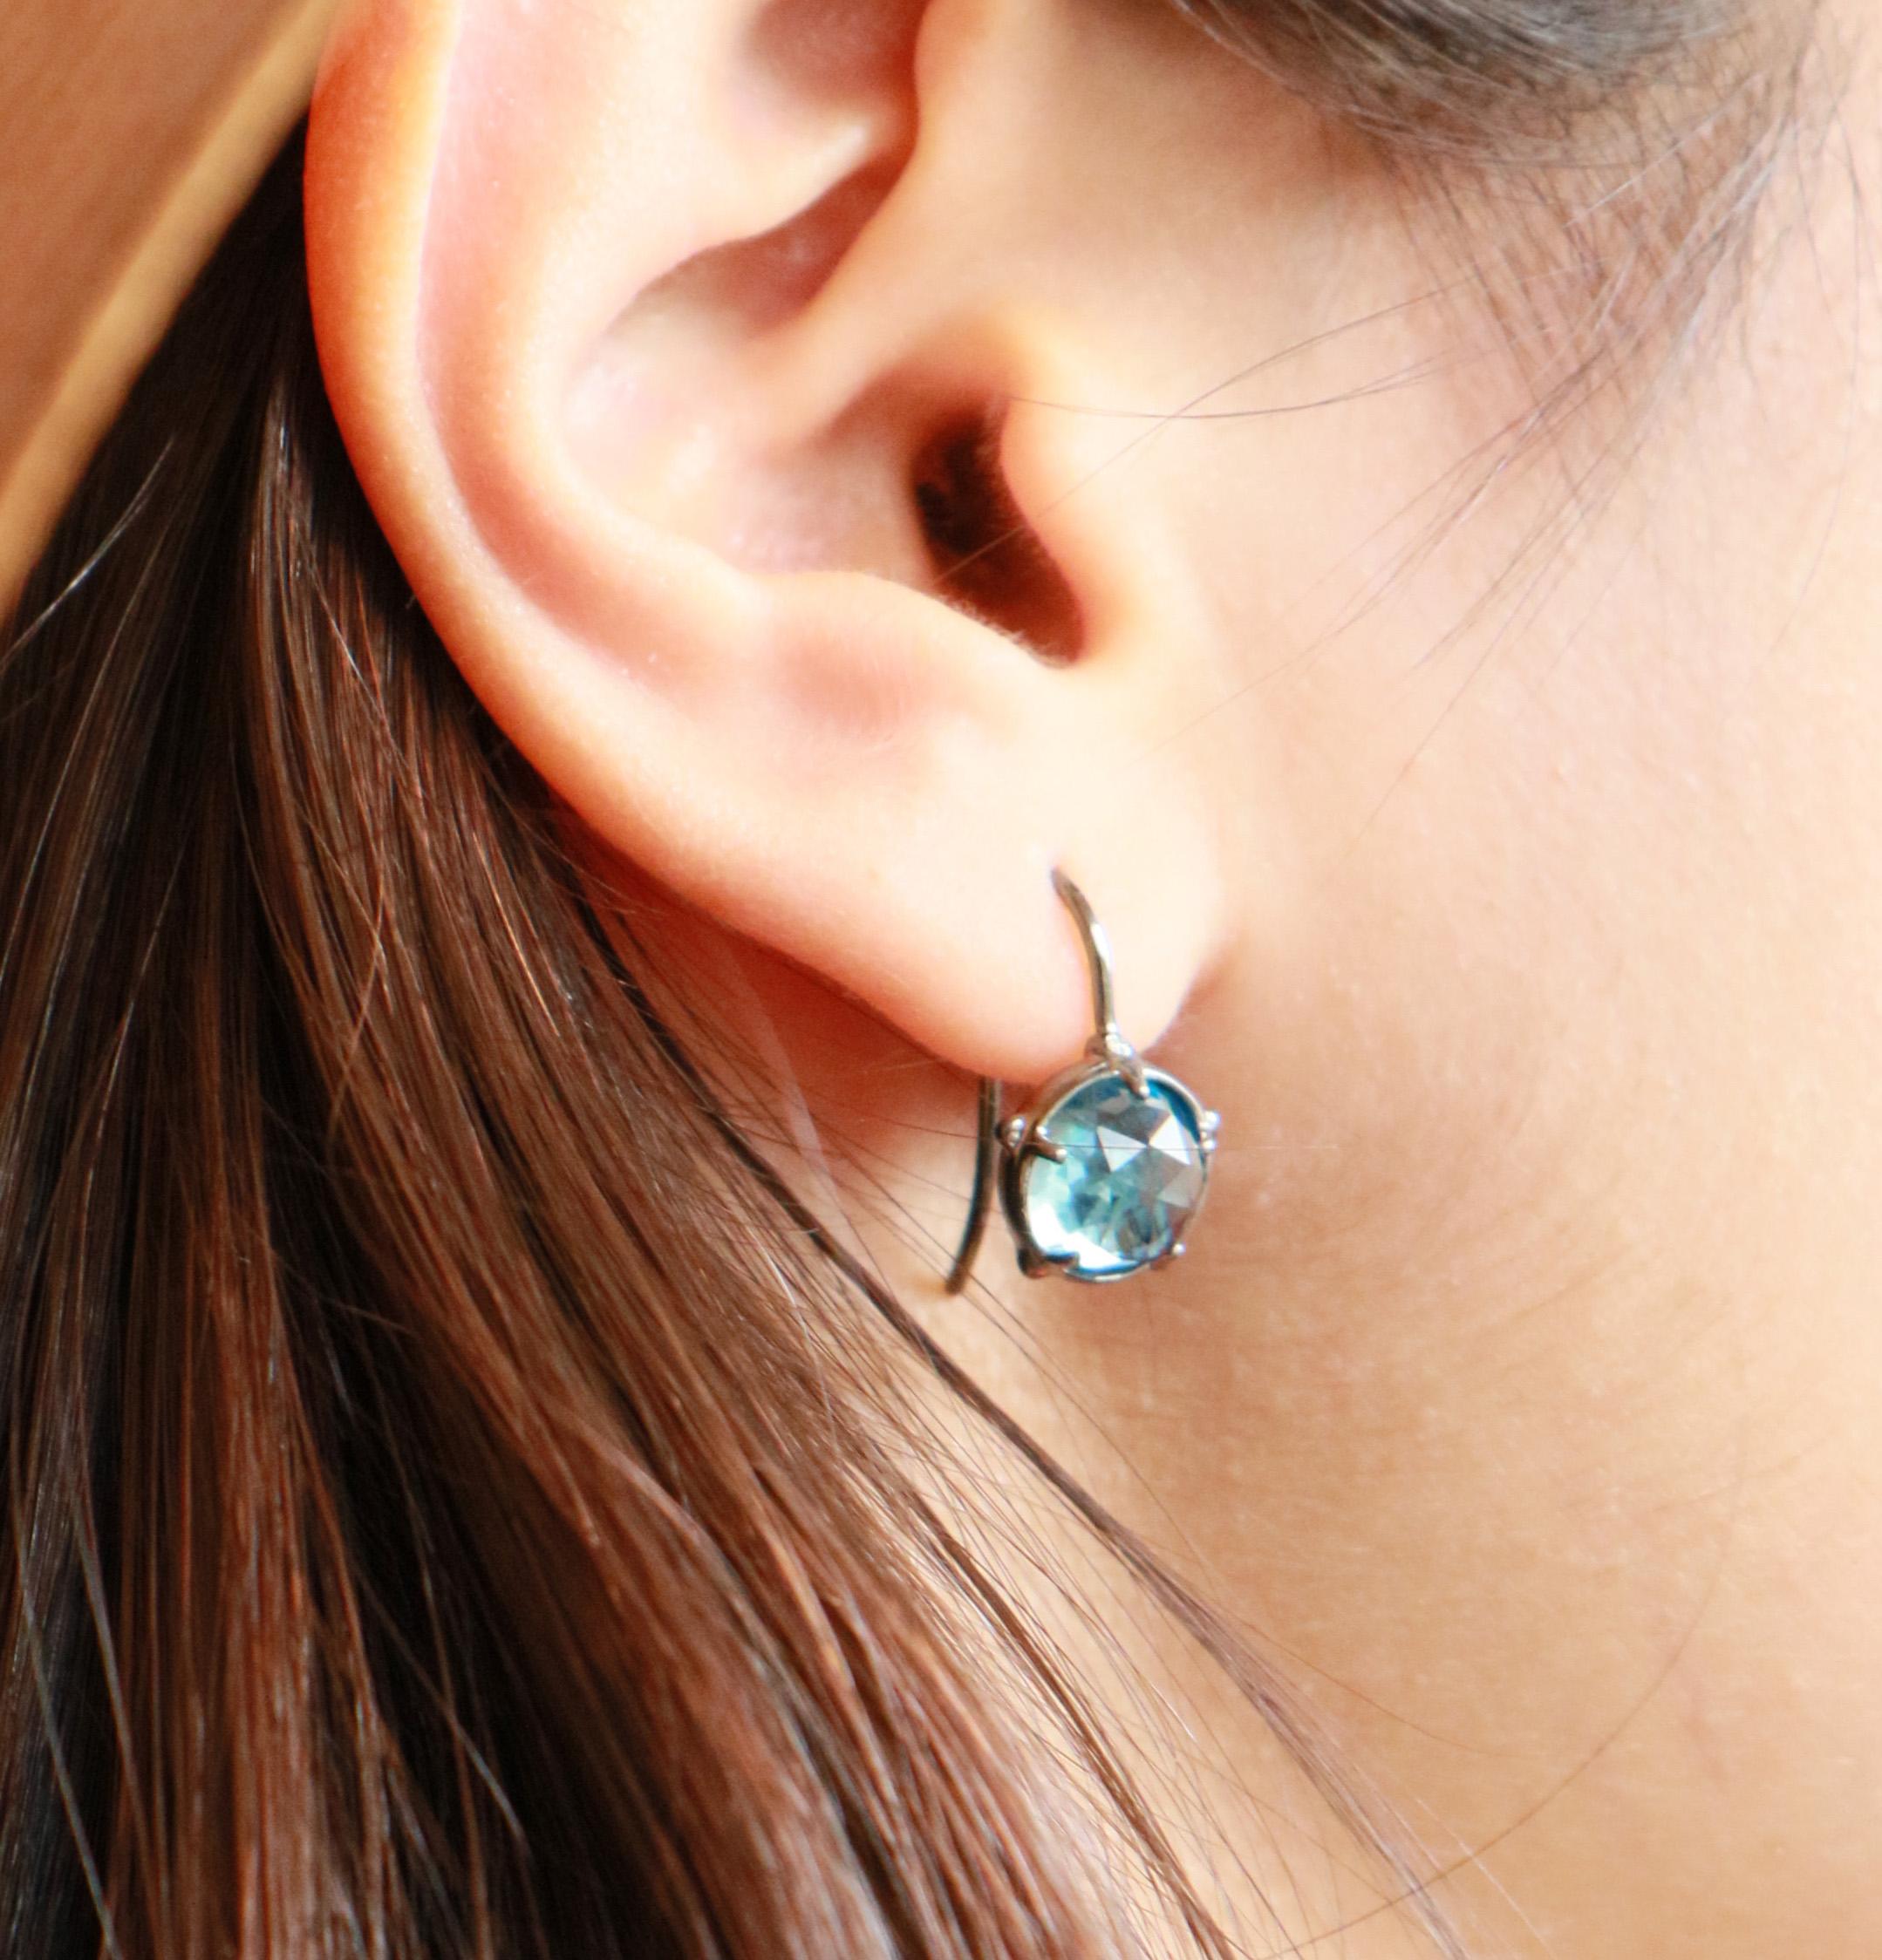 Ces boucles d'oreilles en argent sterling parfaitement positionnées émettent une riche couleur bleue étincelante - elles conviennent parfaitement pour tous les jours ou pour s'habiller.
Bien que symétriques, les topazes bleues taillées en rose